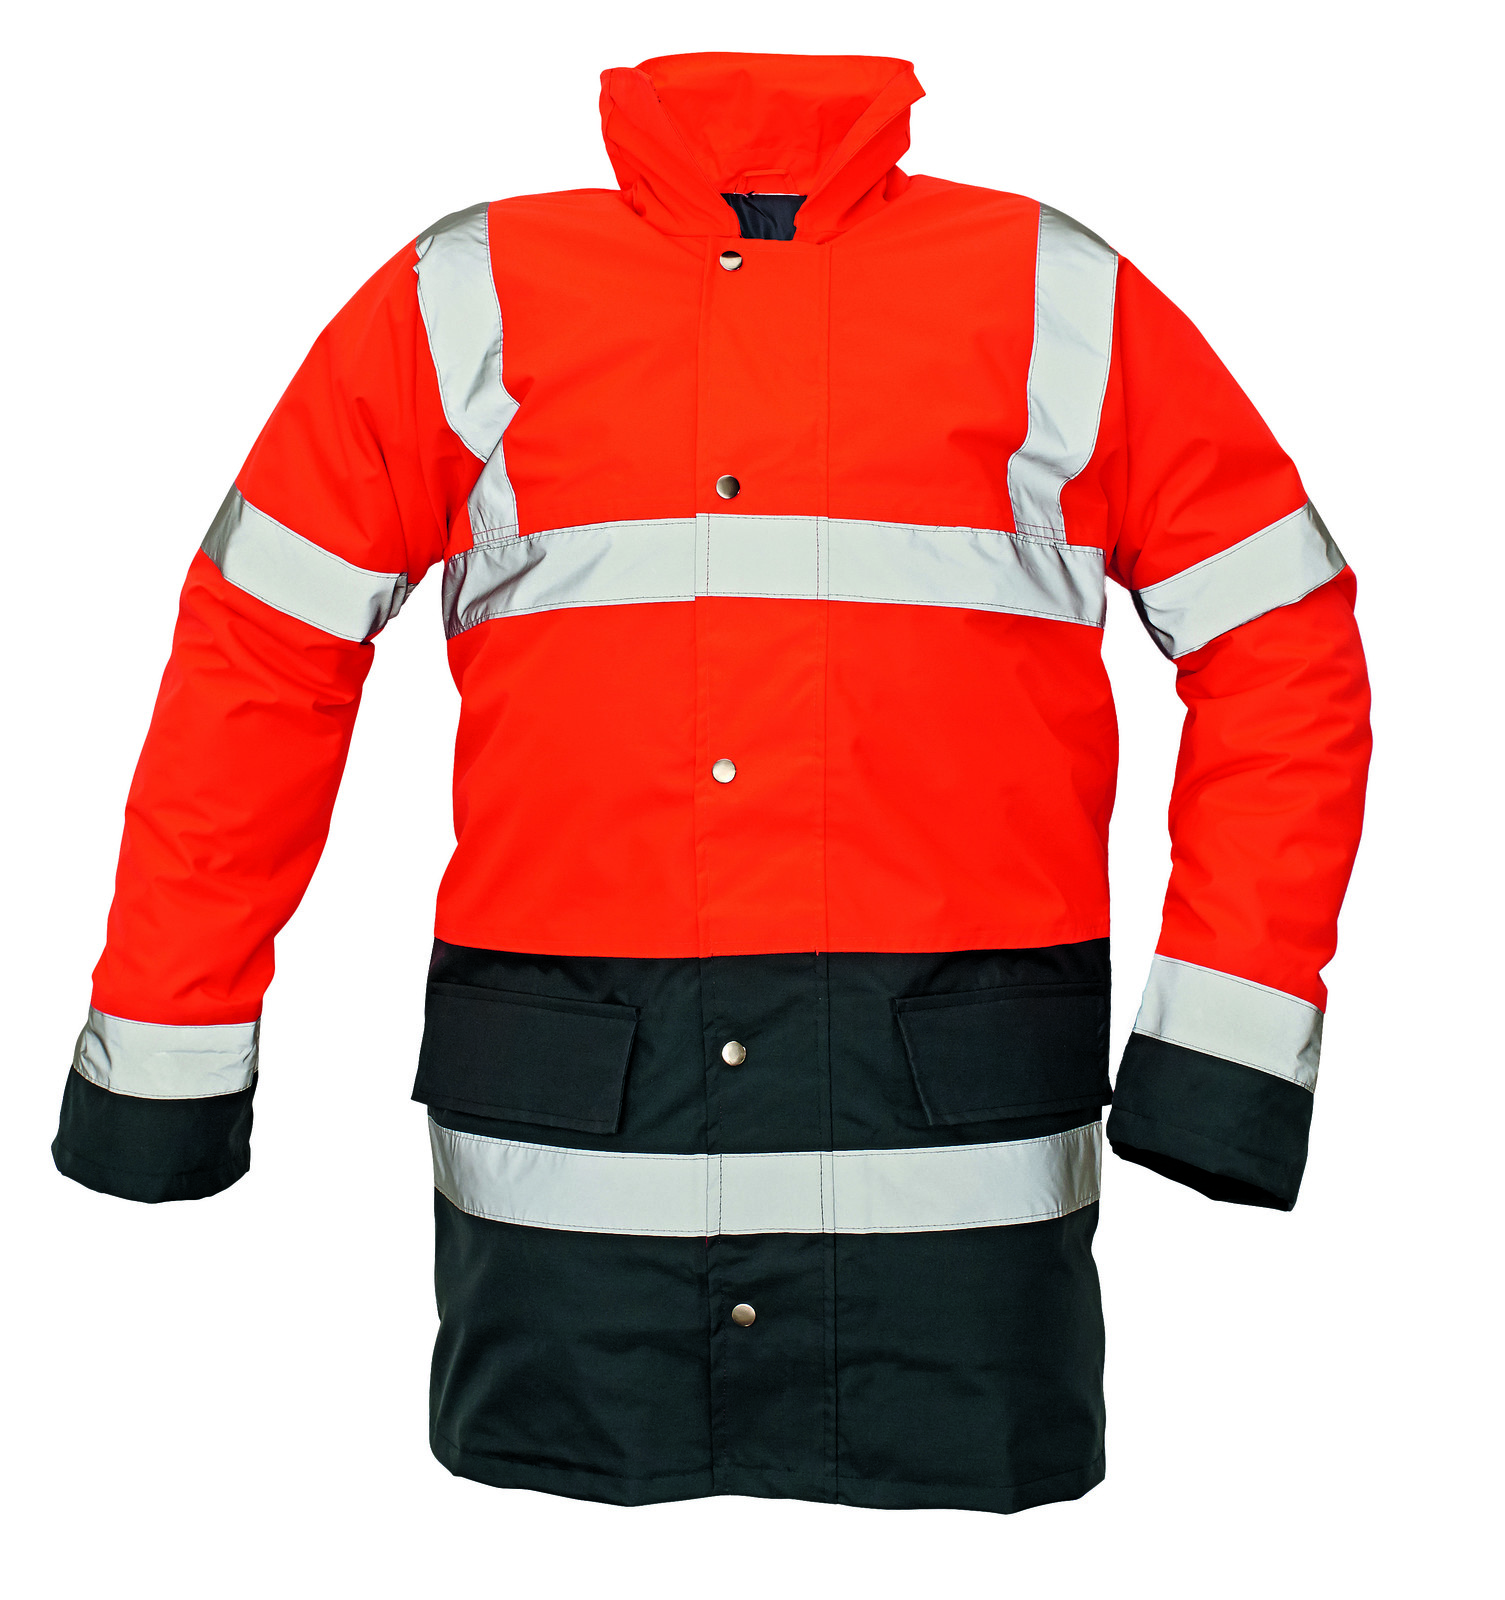 Ľahká zateplená reflexná bunda Sefton - veľkosť: XXL, farba: červená/navy